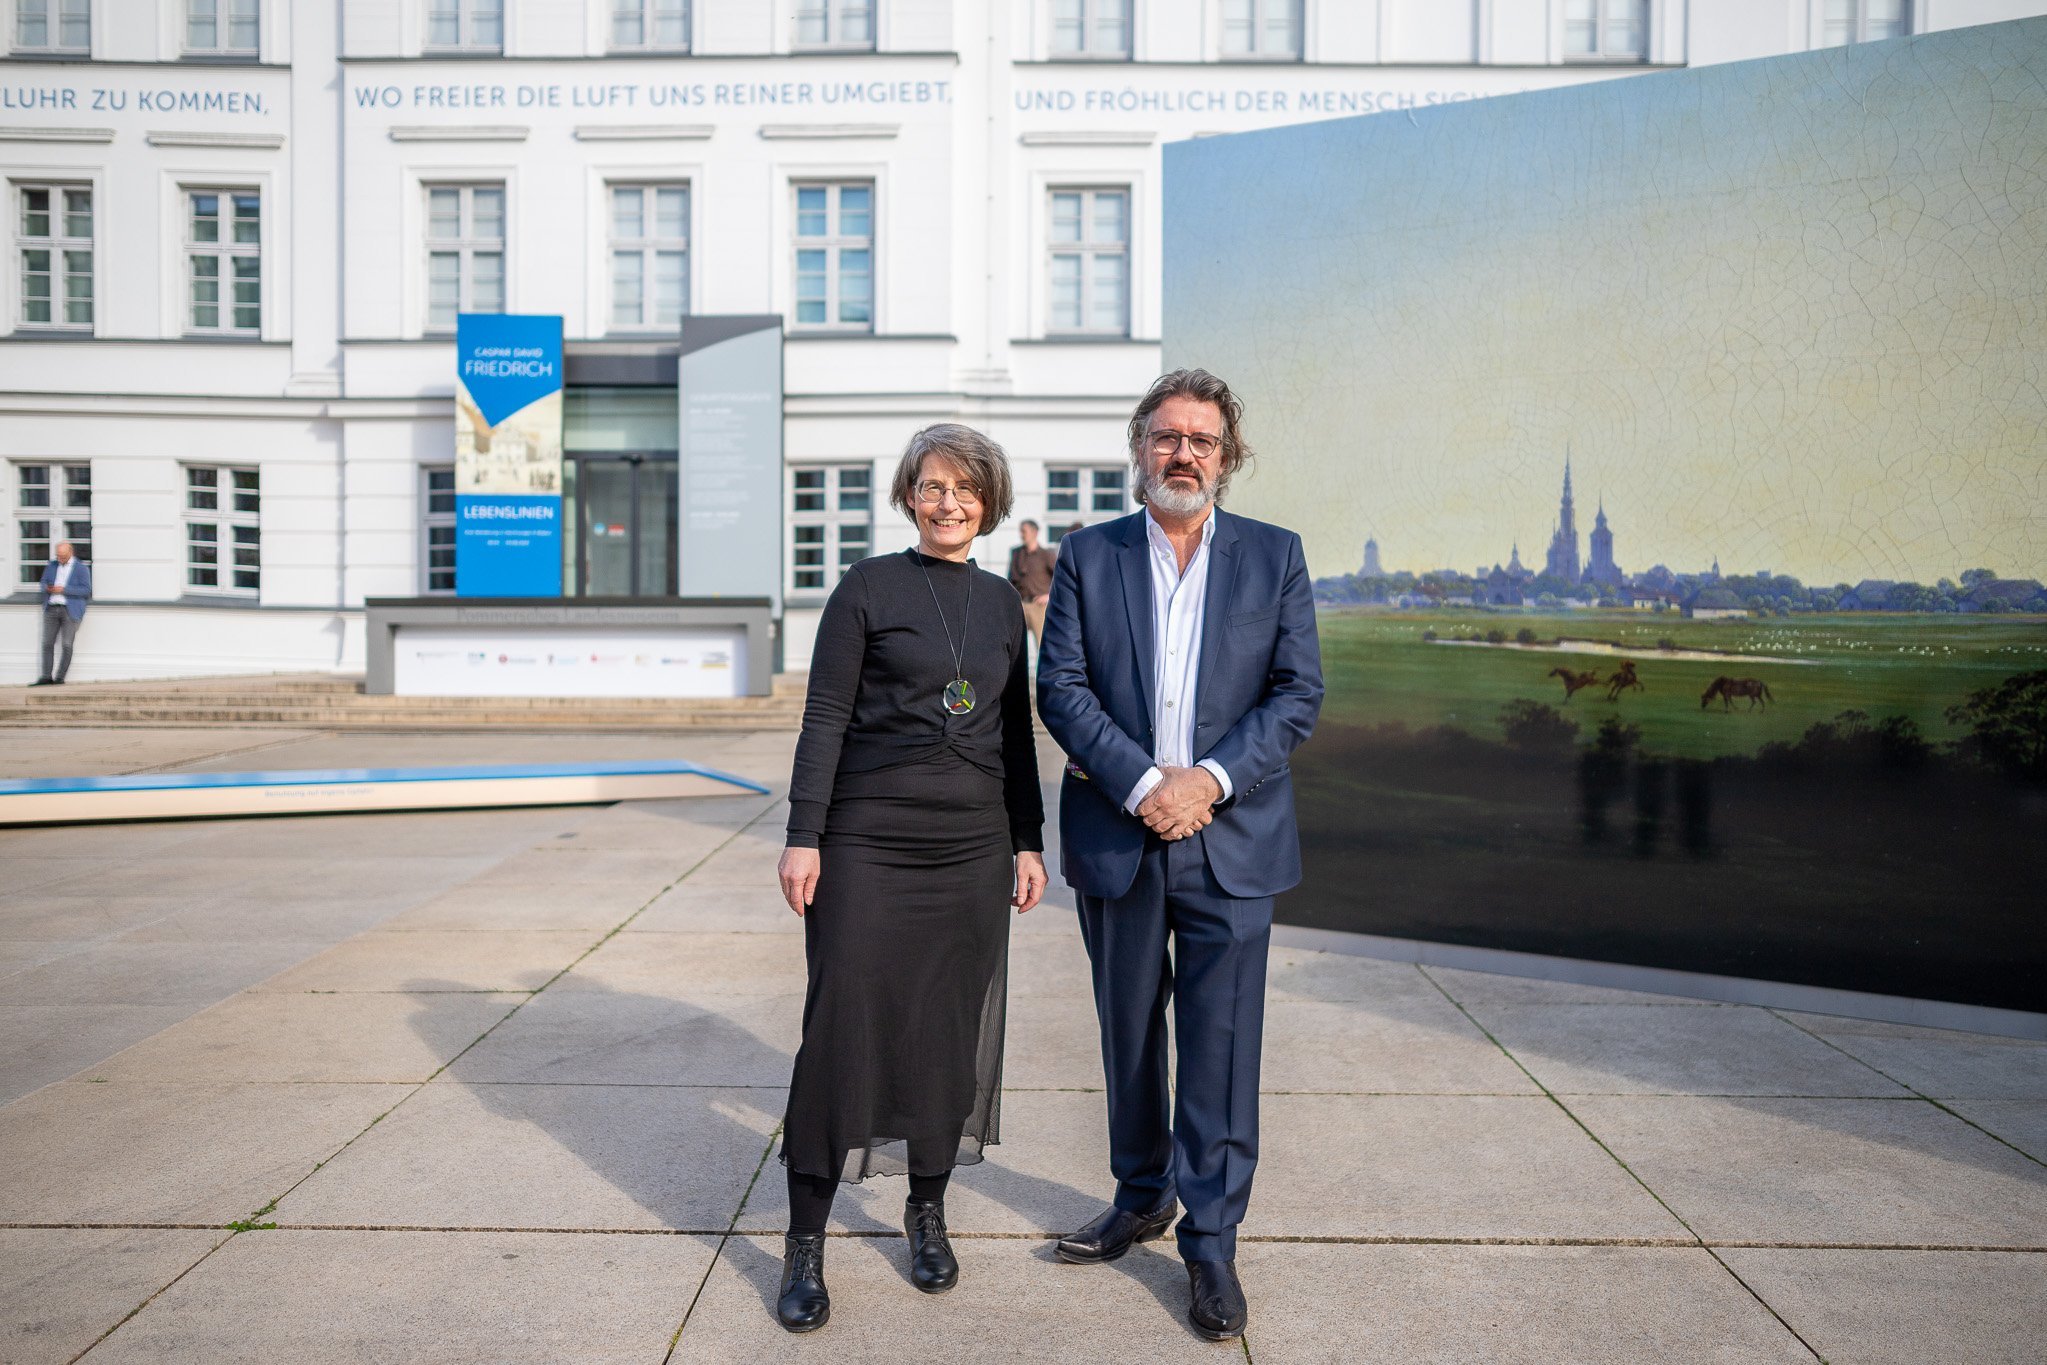 Dr. Birte Frenssen und Olafur Eliasson, hinter ihnen auf dem Vorplatz ein großer Aufsteller mit den "Wiesen bei Greifswald", dahinter die Fassade des Museums.